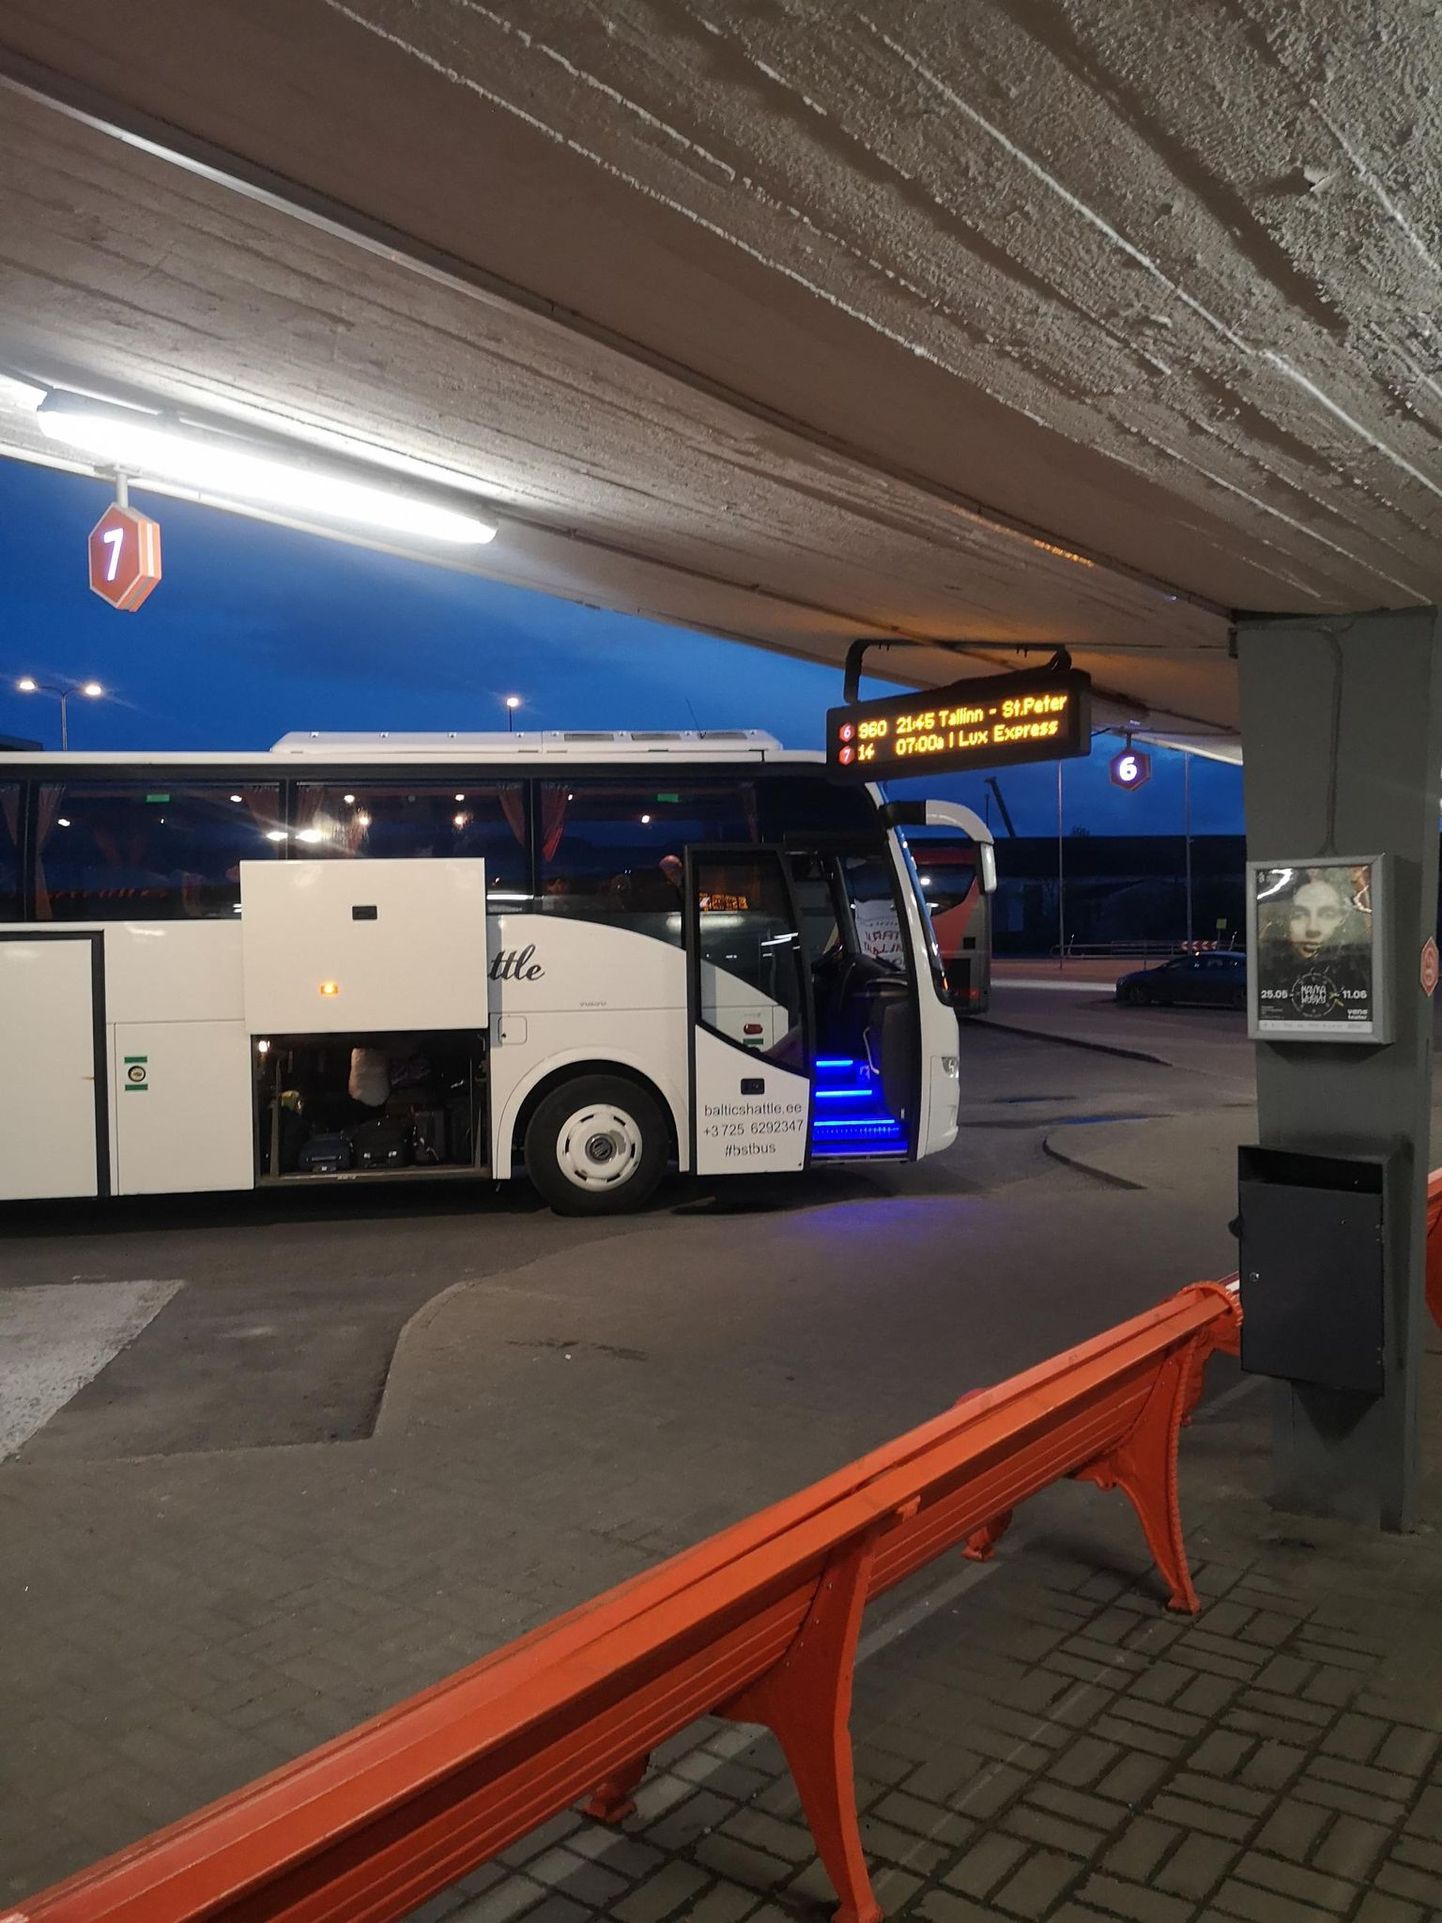 Стоимость проезда в Baltic Shuttle составляет от 20 до 35 евро, автобус не переполнен, но каким-то образом бизнес все равно кажется окупаемым.